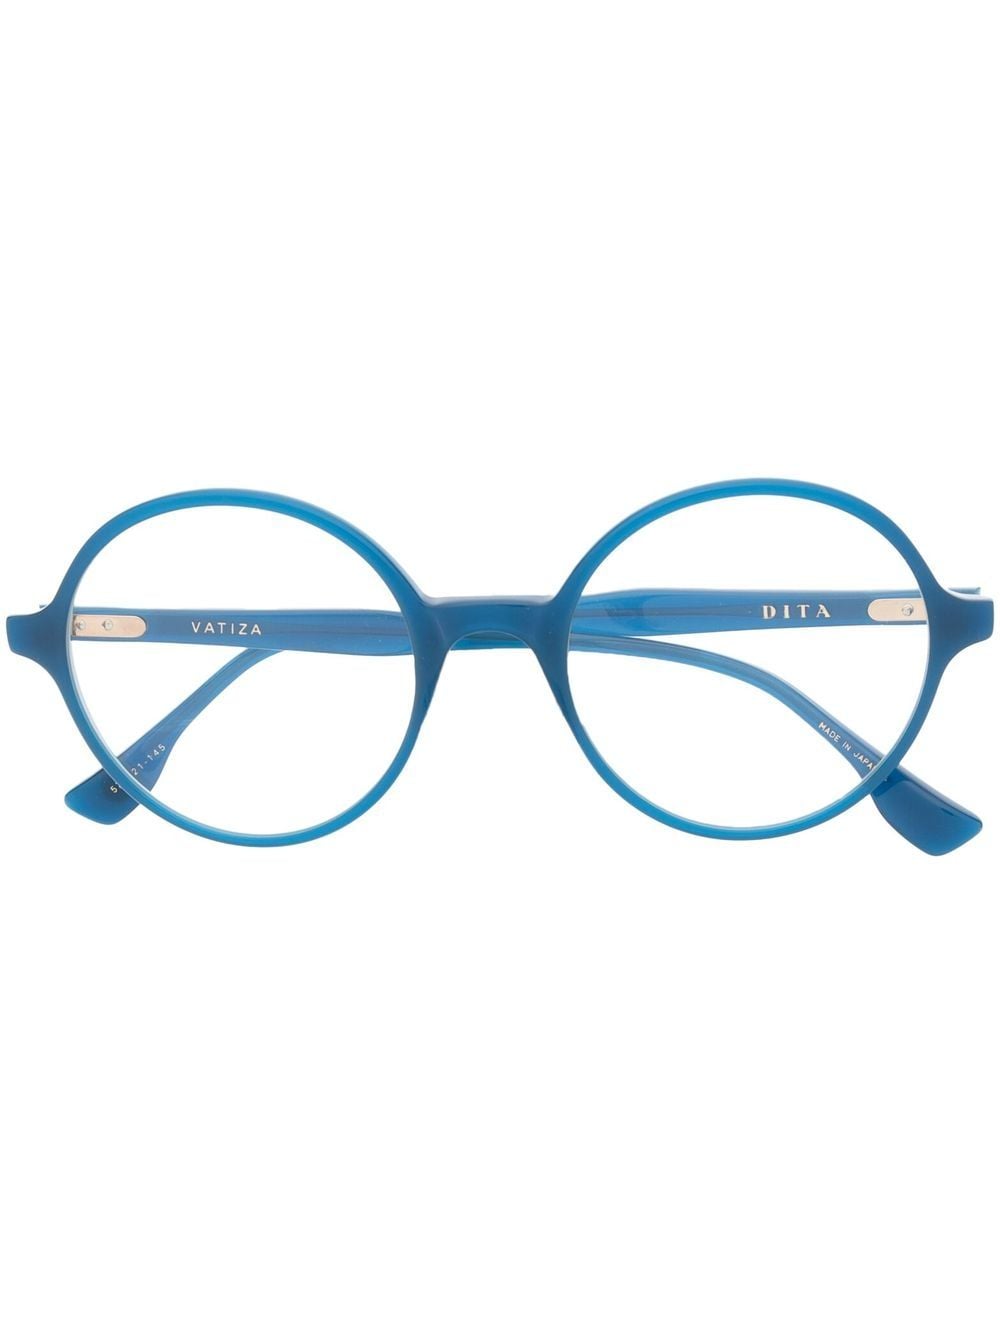 Dita Eyewear Vatiza round-frame glasses - Blue von Dita Eyewear